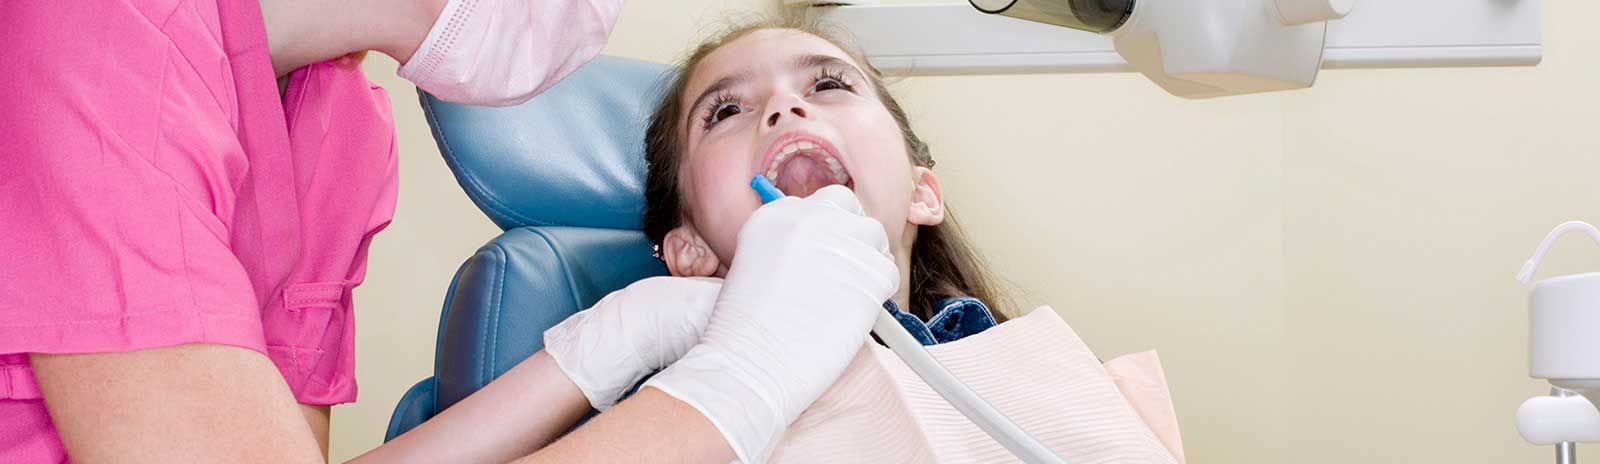 Clínica Dental de Especialidades Doctora Amparo Sierra Alonso limpieza dental